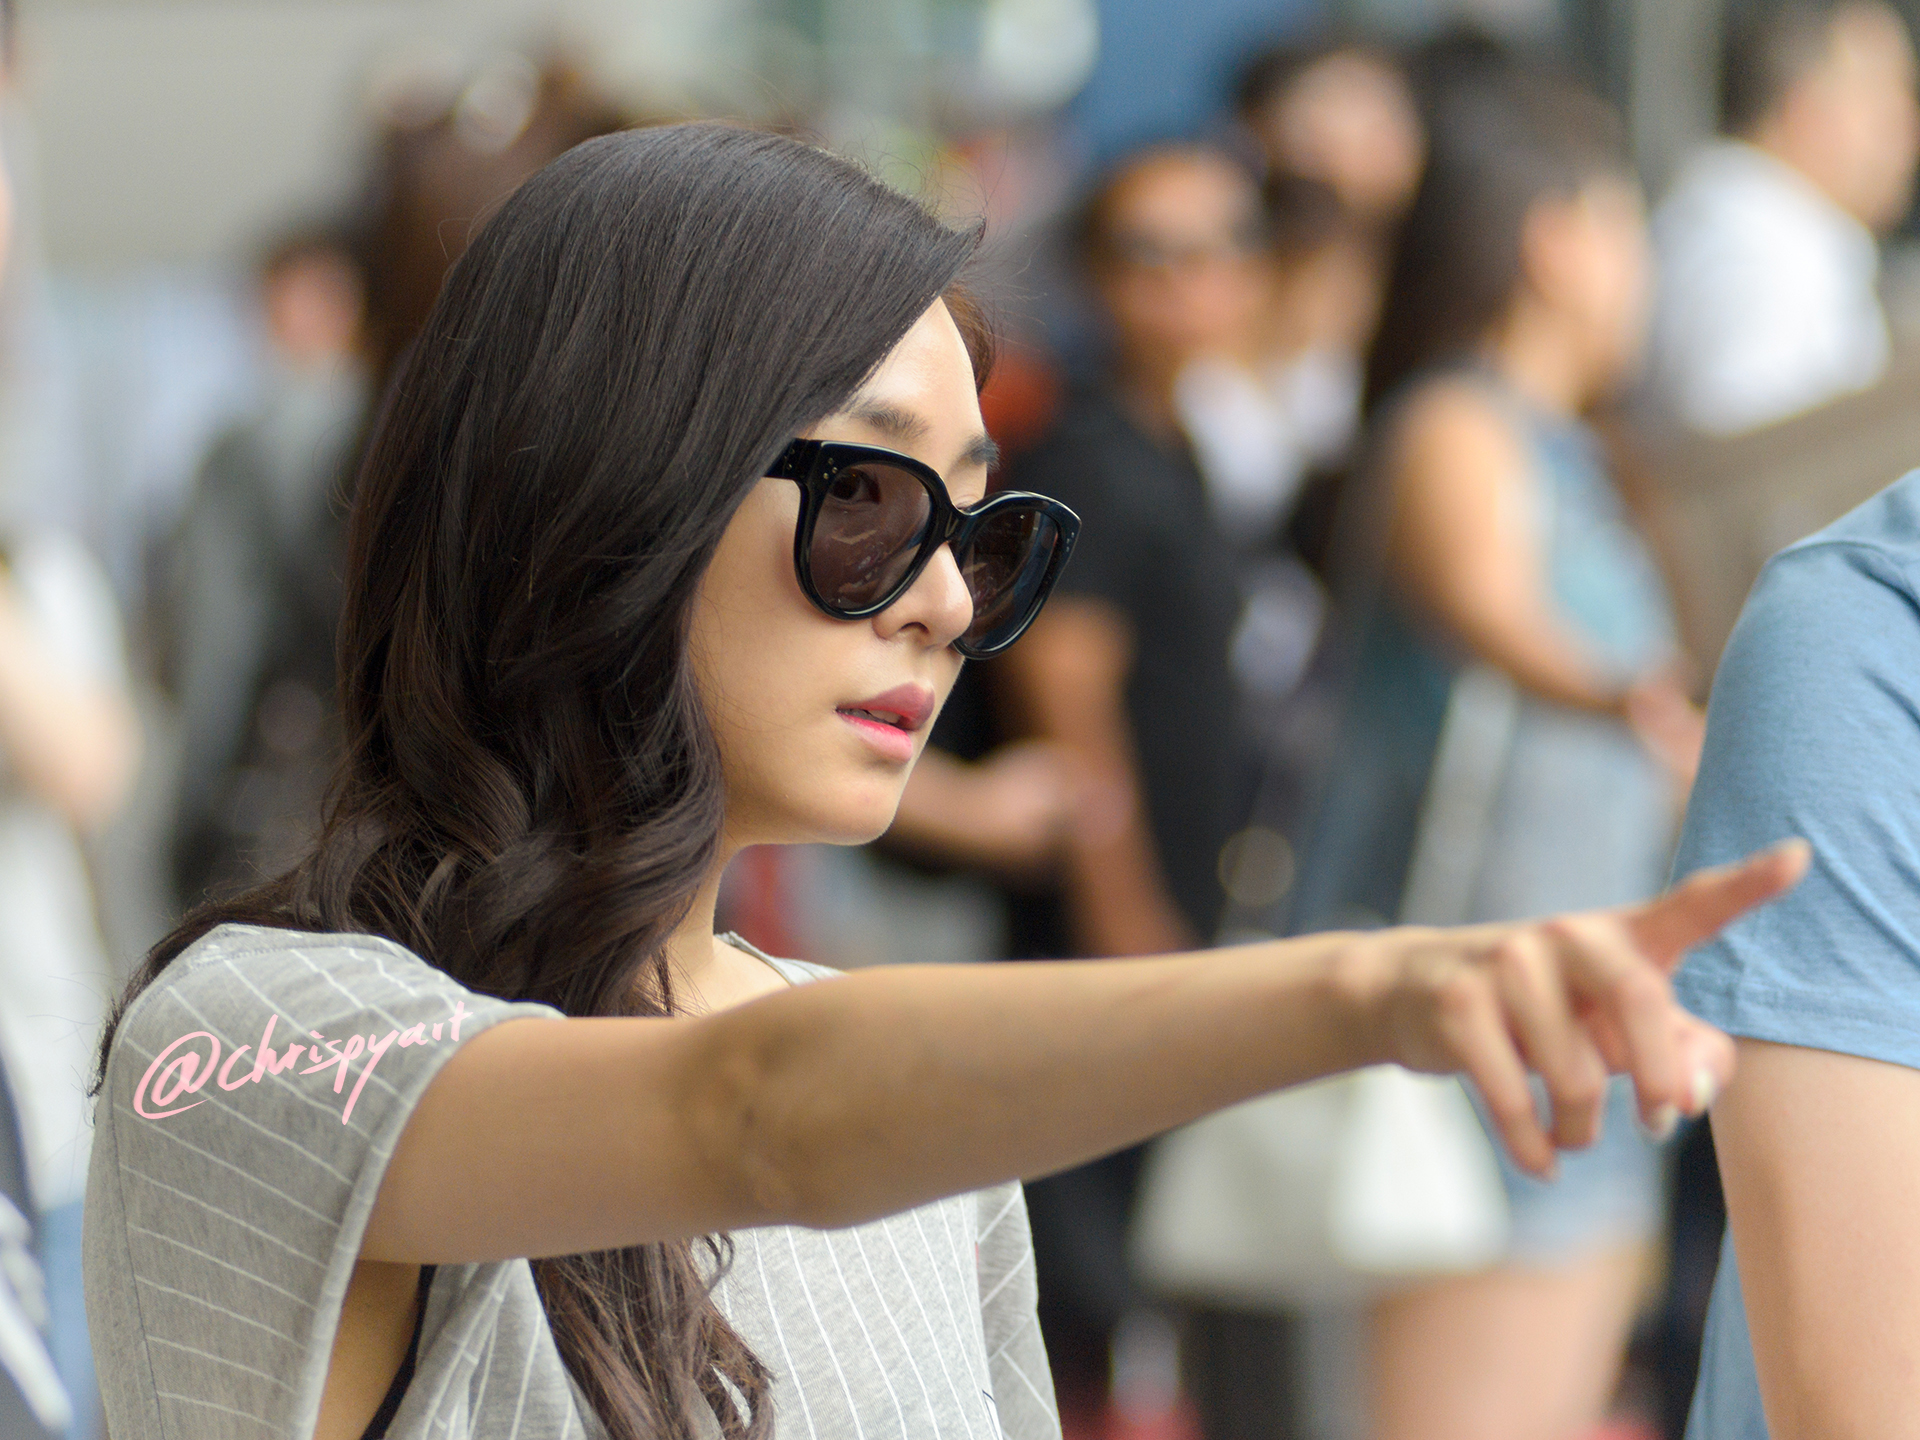 [PIC][18-08-2015]Tiffany trở về Hàn Quốc vào chiều nay Dsc_6286-kopie2